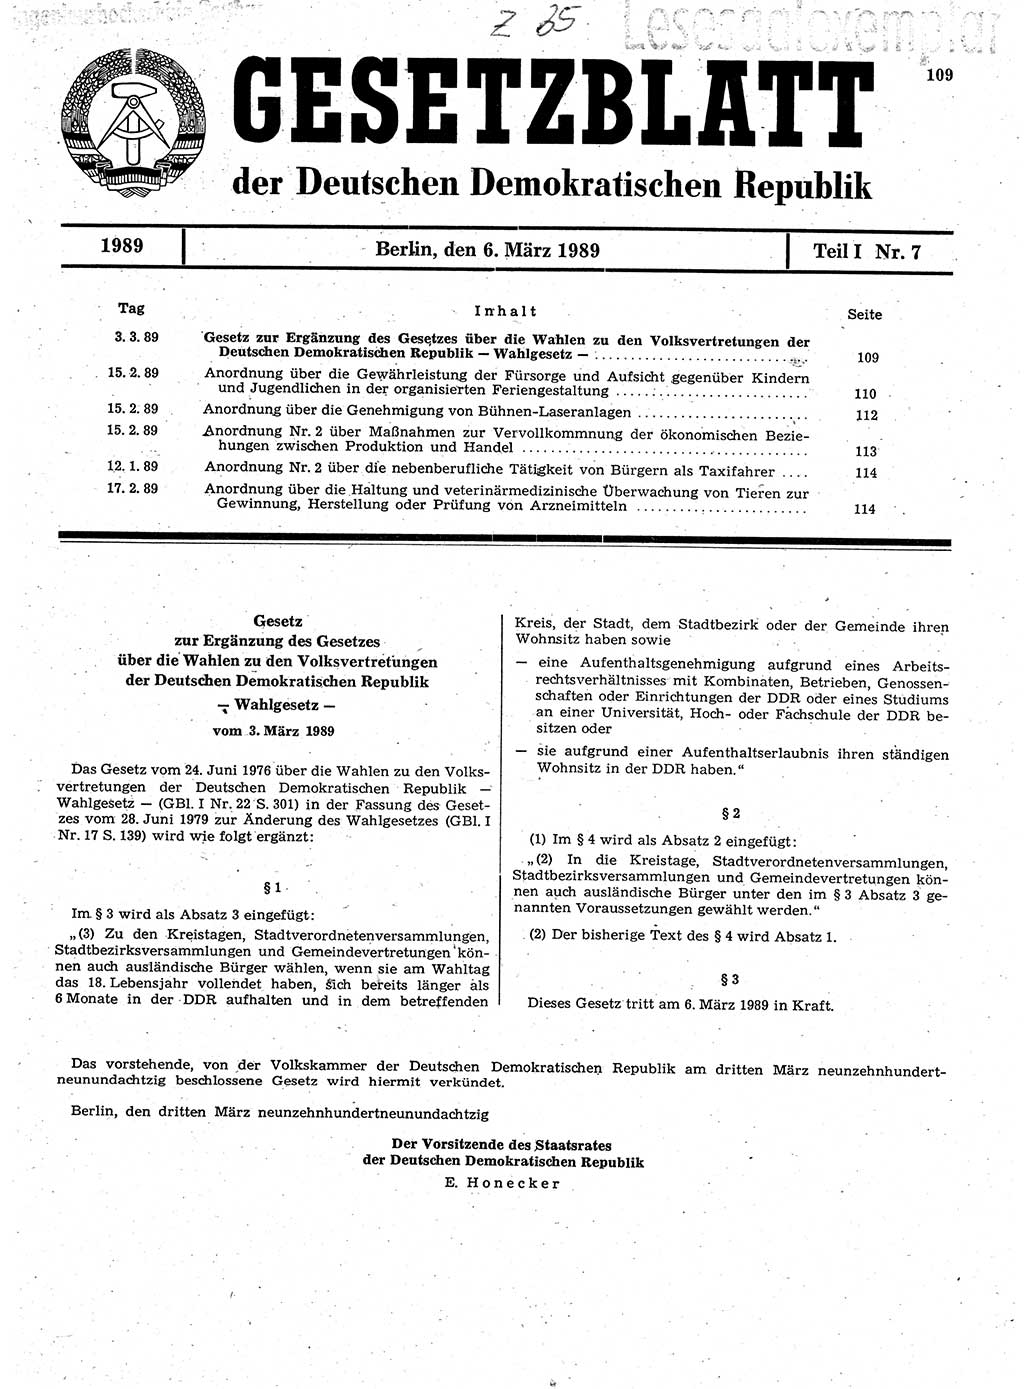 Gesetzblatt (GBl.) der Deutschen Demokratischen Republik (DDR) Teil Ⅰ 1989, Seite 109 (GBl. DDR Ⅰ 1989, S. 109)